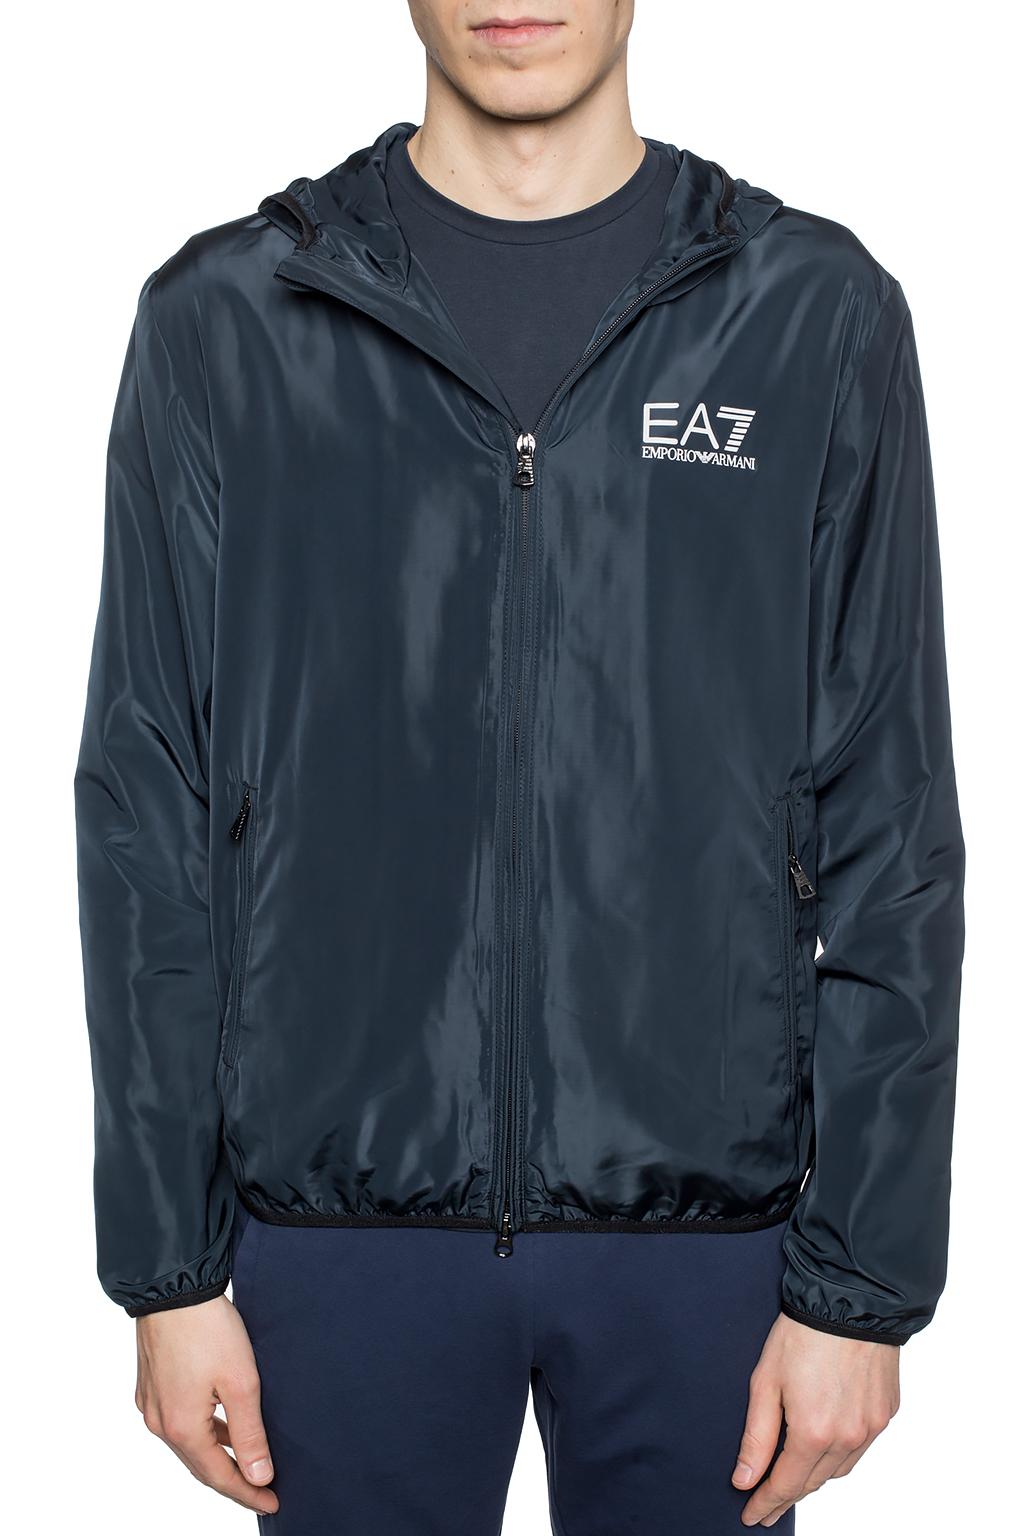 ea7 rain jacket